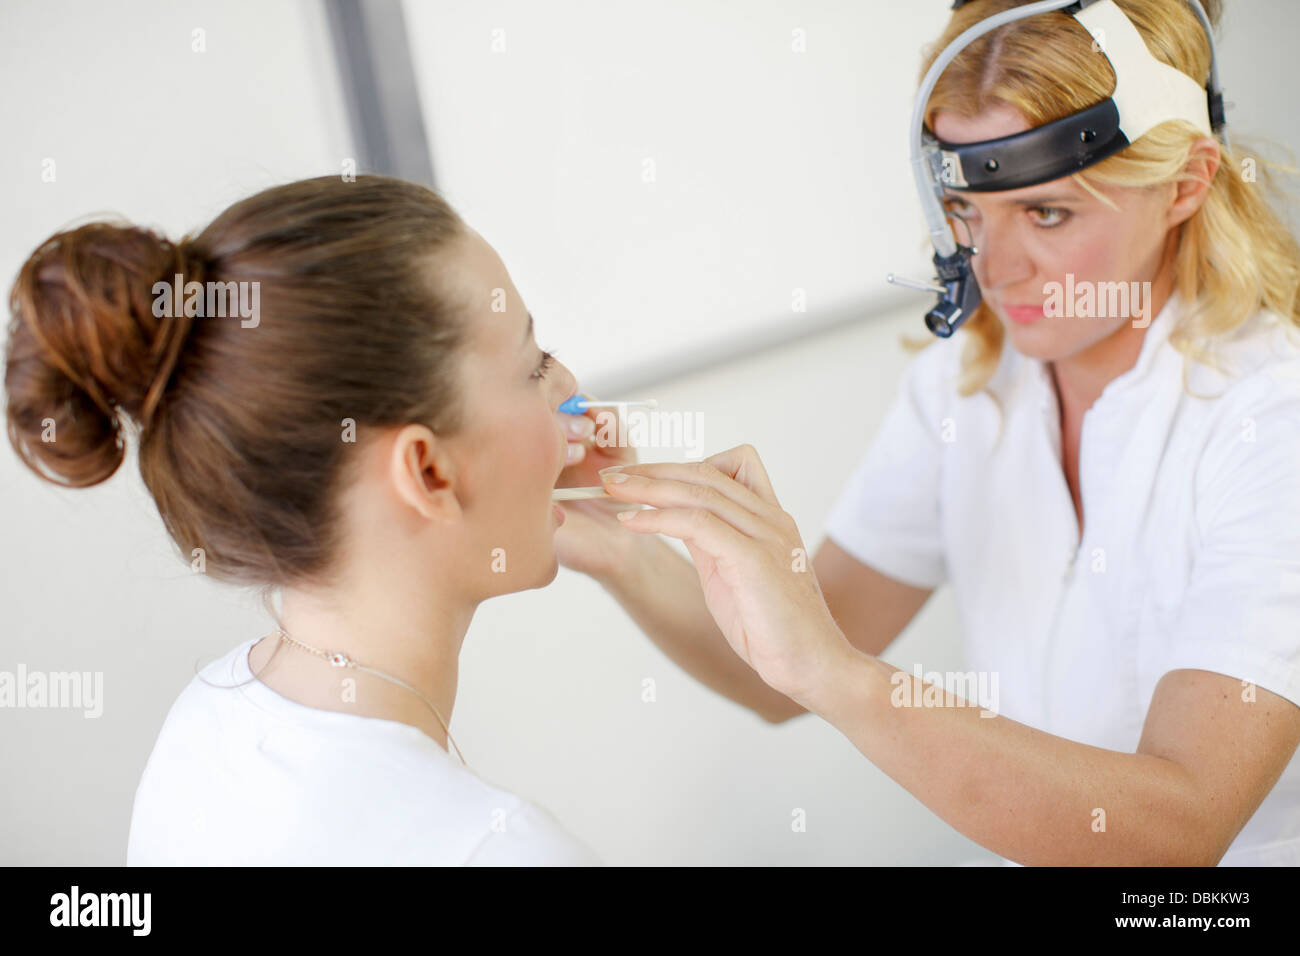 ENT médecin examine la gorge d'une patiente Banque D'Images